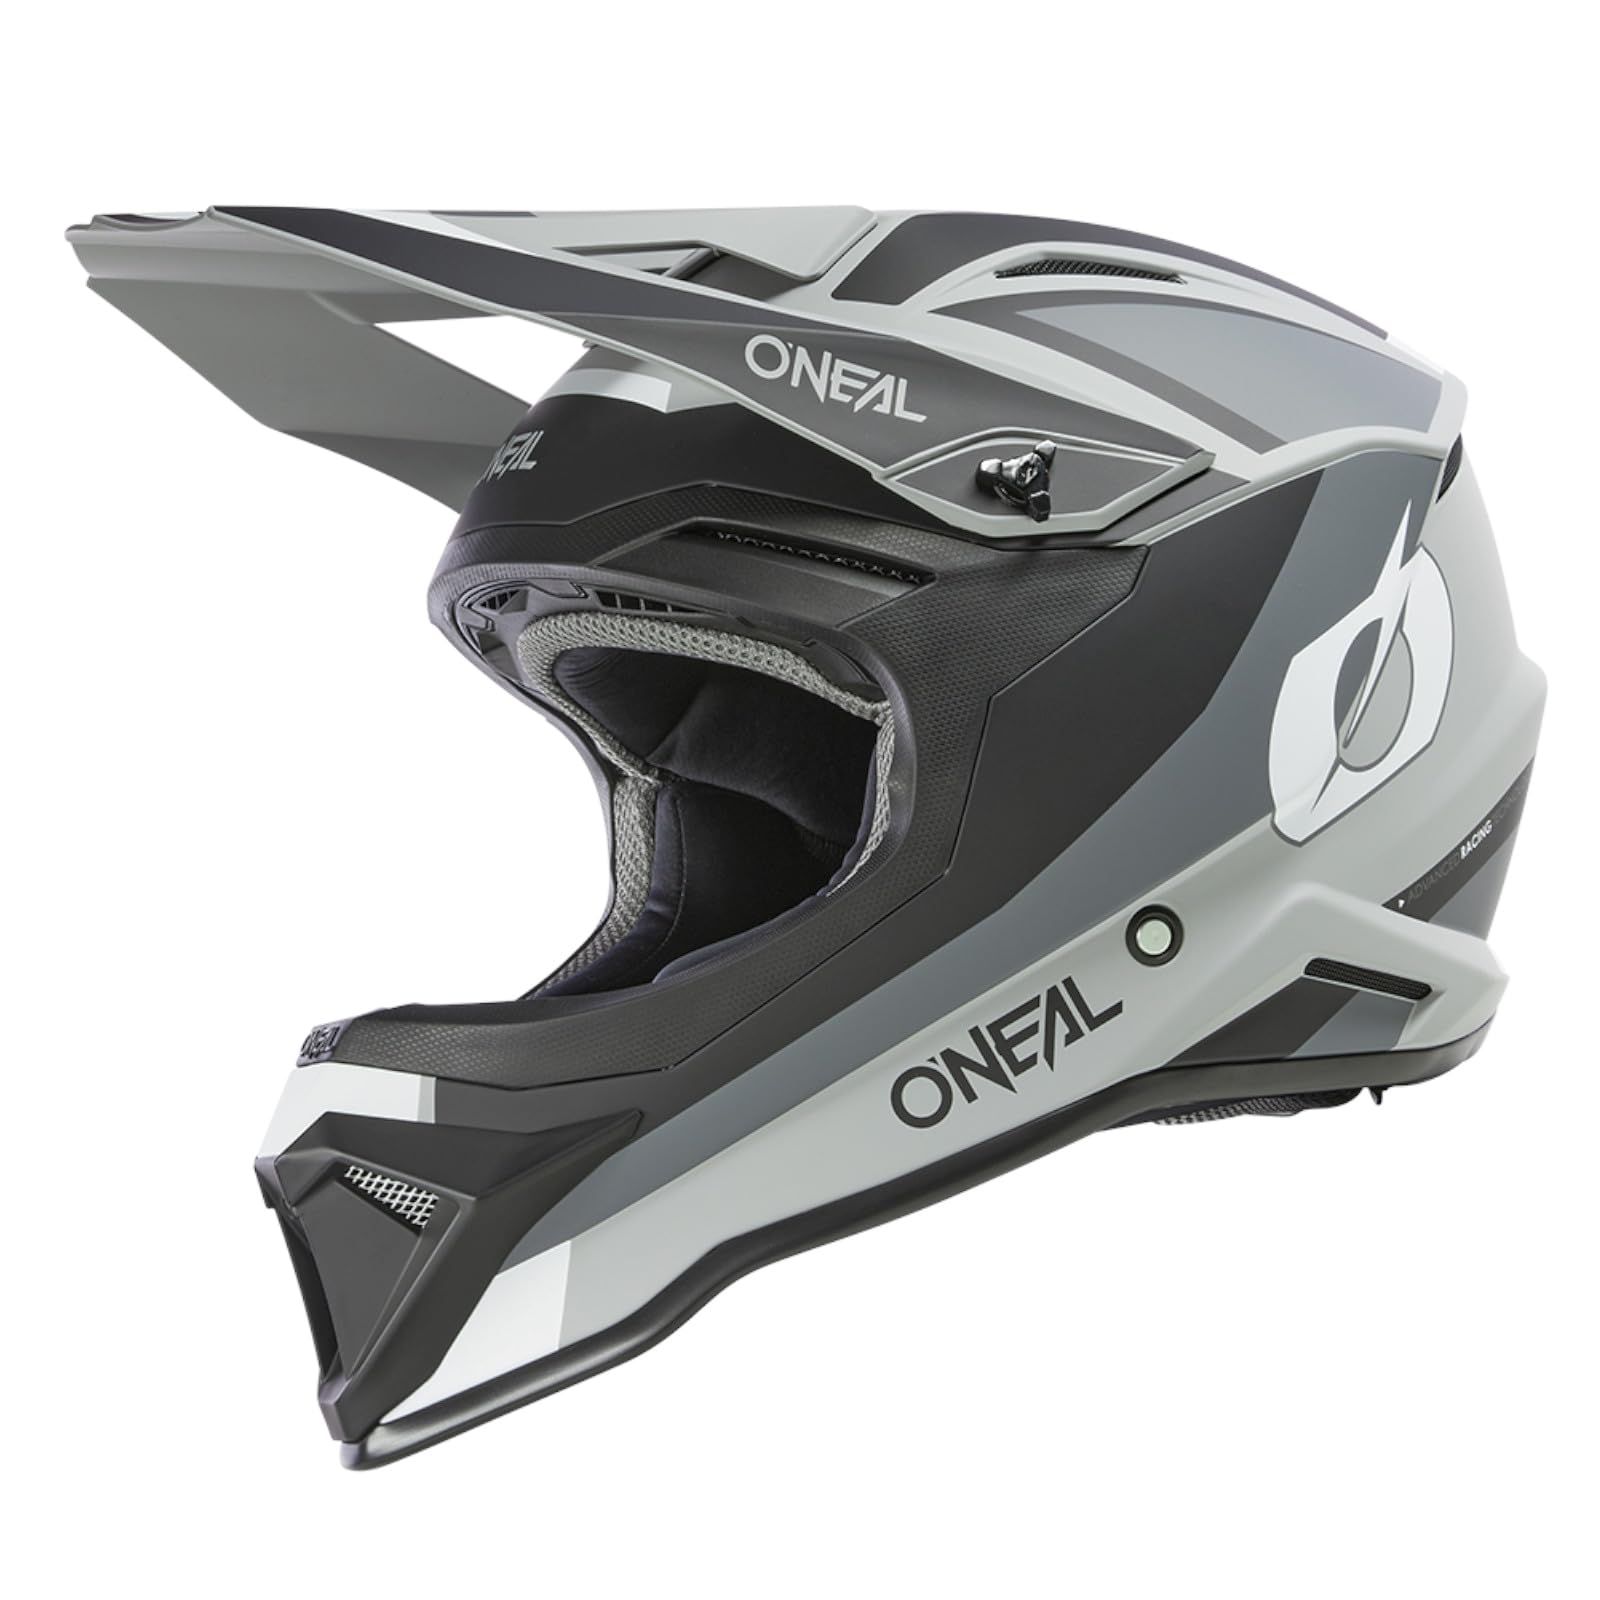 O'NEAL | Motocross-Helm | MX Enduro | ABS-Schale, Konfort-Innenfutter, Lüftungsöffnungen für optimale Belüftung & Kühlung | 1SRS Helmet Stream V.24 | Erwachsene | Schwarz Grau | Größe L von O'NEAL